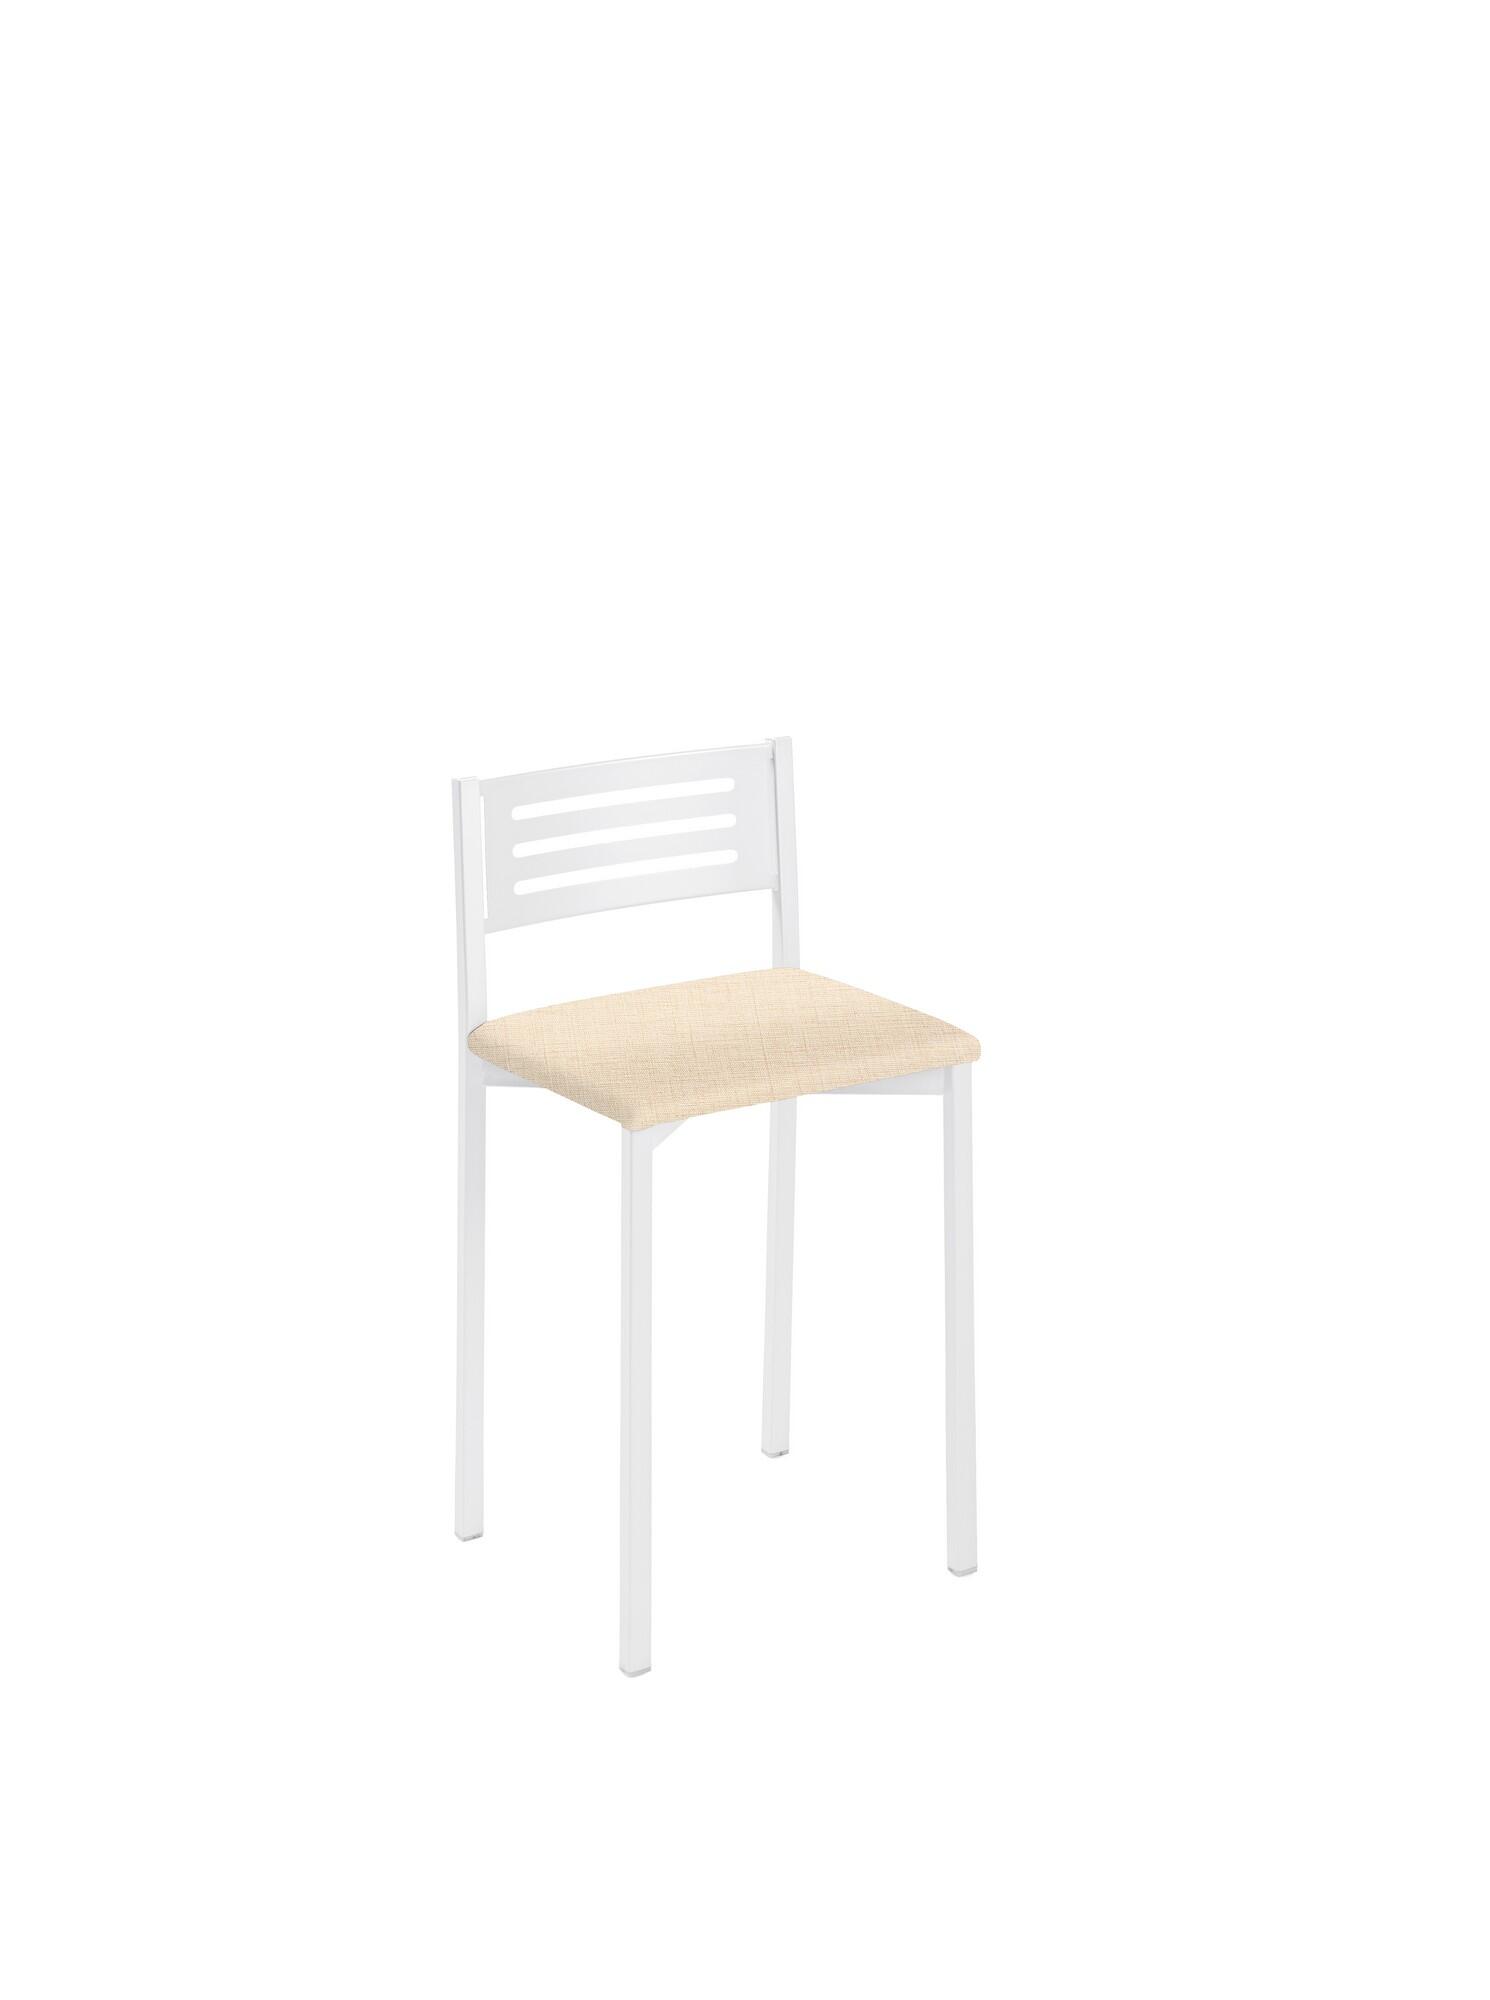 Taburete de estructura color blanco texturizado y asiento arena de 33 x 47 cm